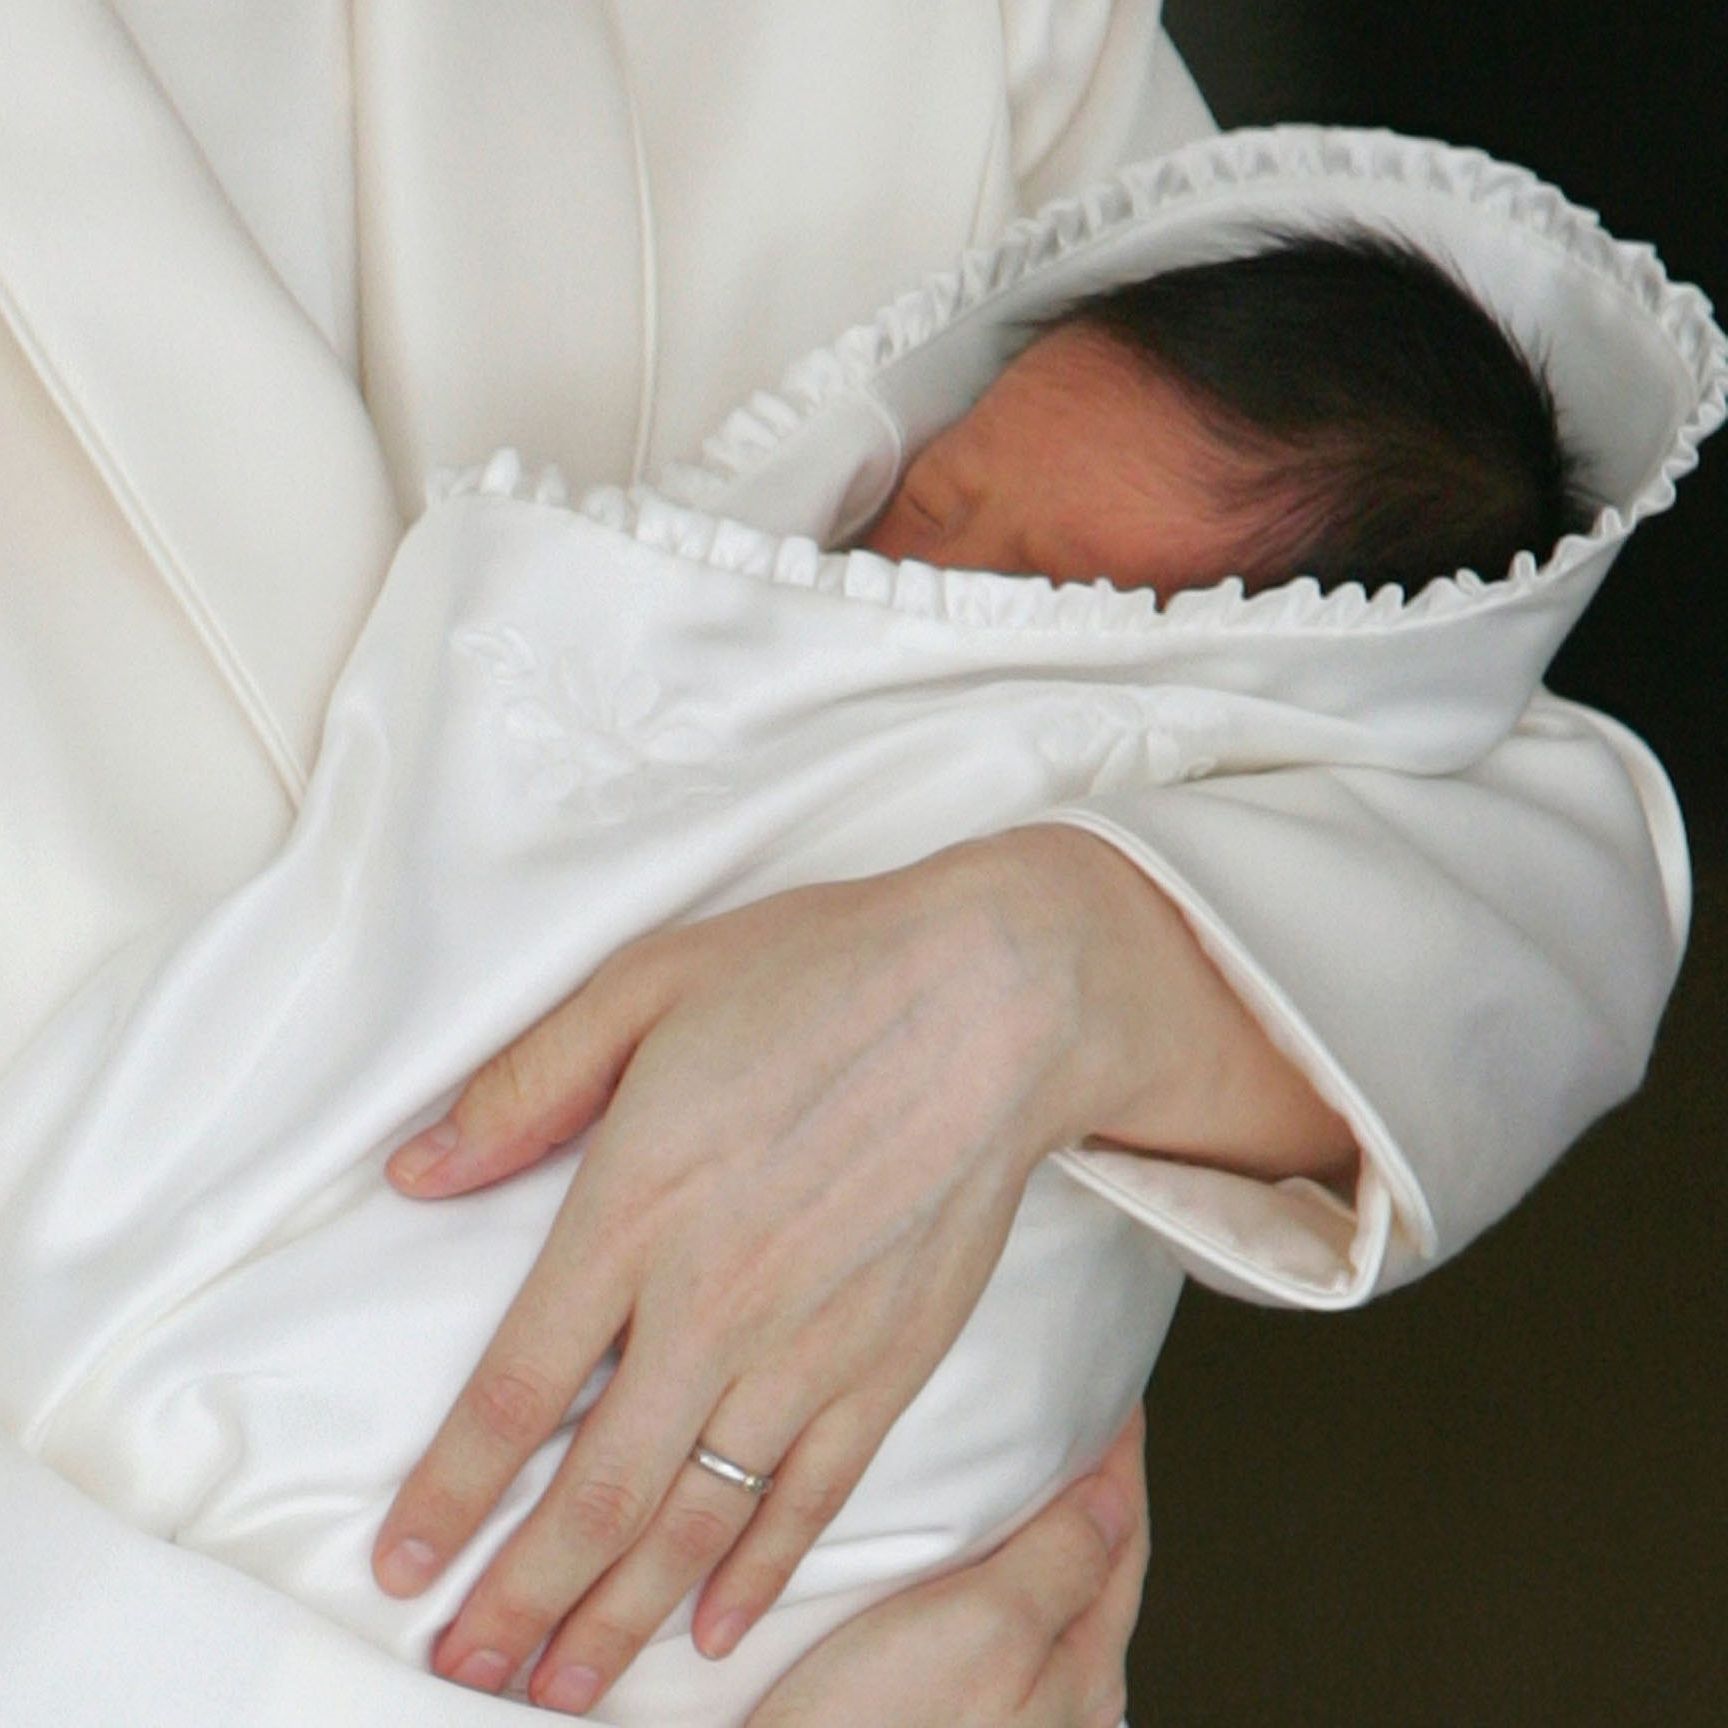 Българска проститутка ”дари” бебето си Исус на французи